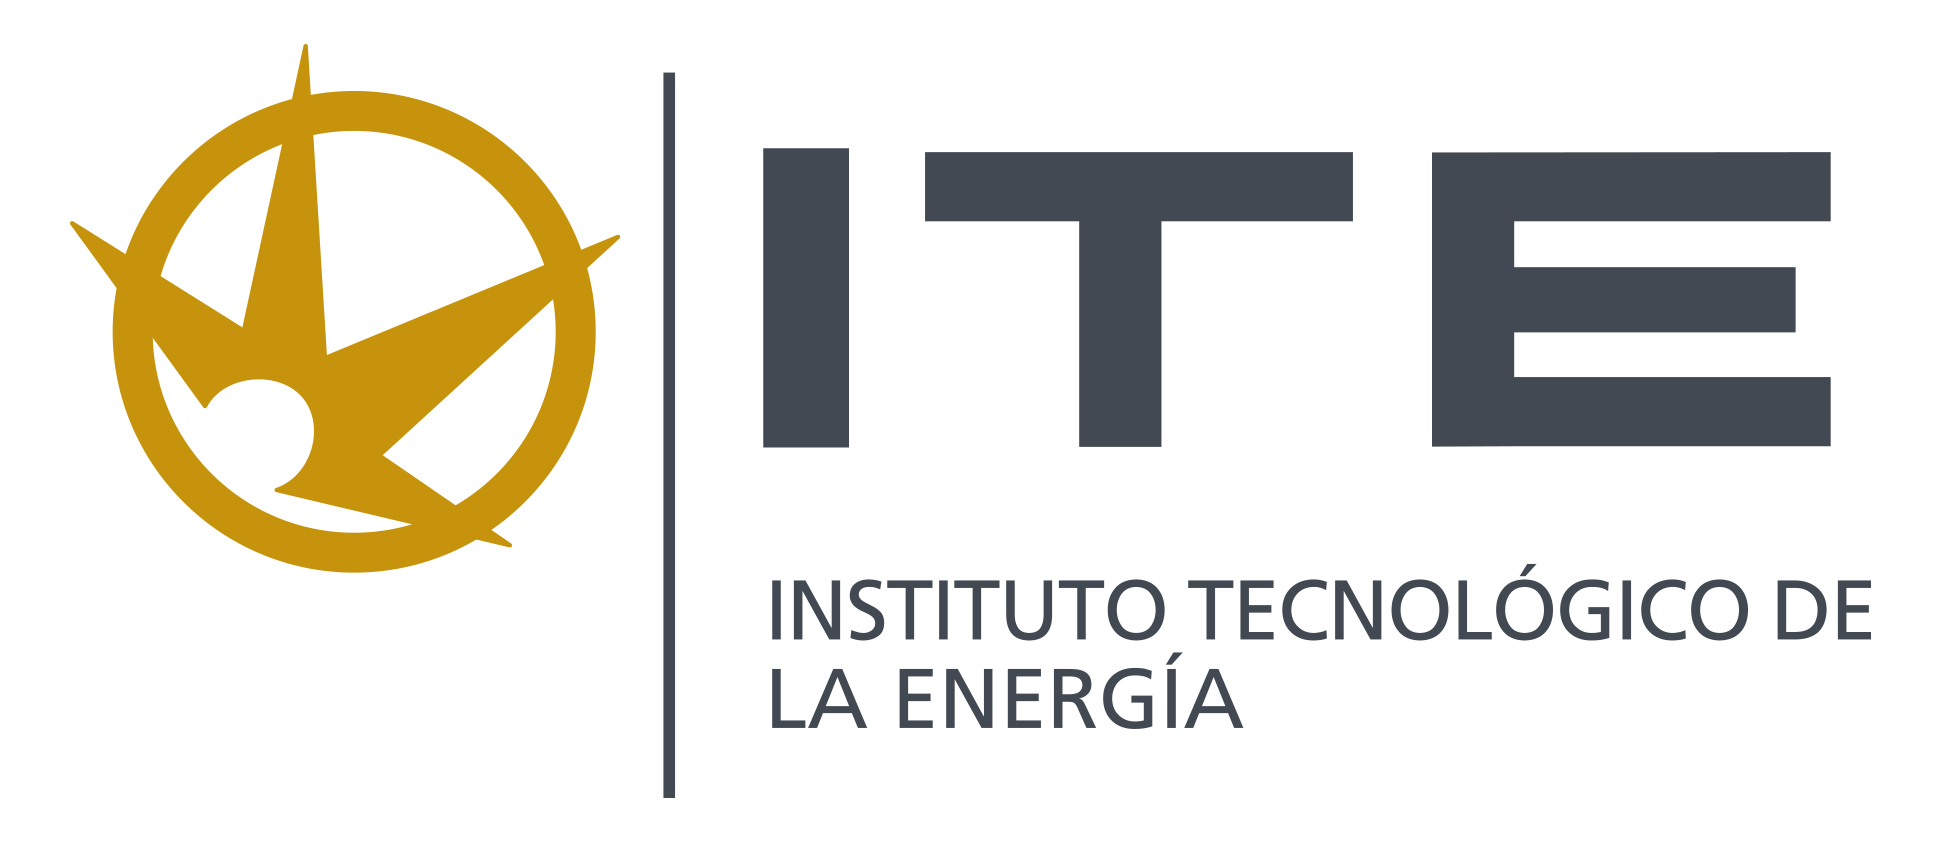 ITE - Instituto Tecnológico de la Energía - AVVE